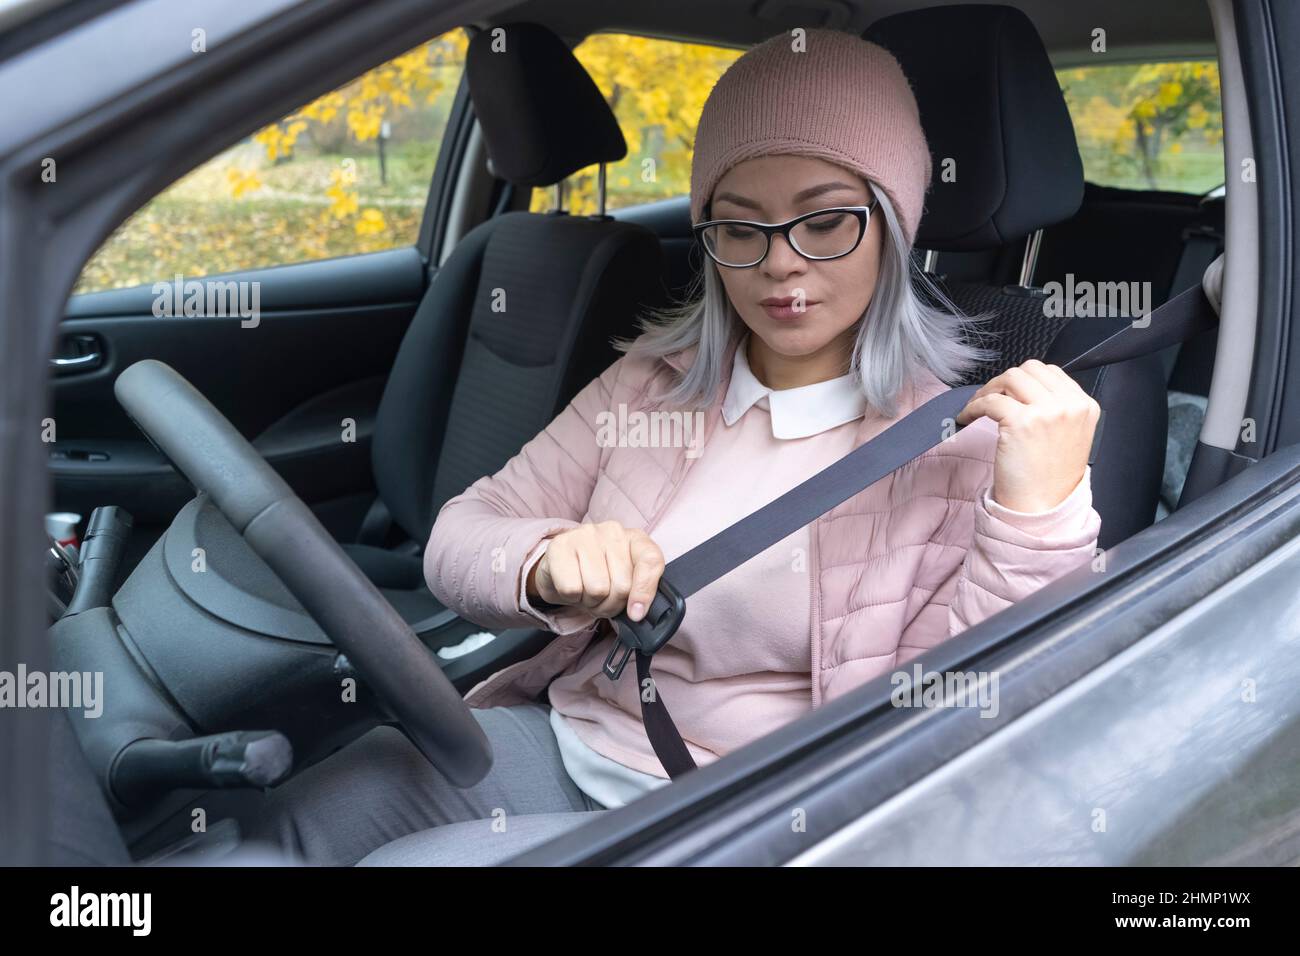 Frau Sitzt Auf Autositz Und Beigefügt Sicherheitsgurt Stockbild - Bild von  kaukasisch, verkehr: 178425395